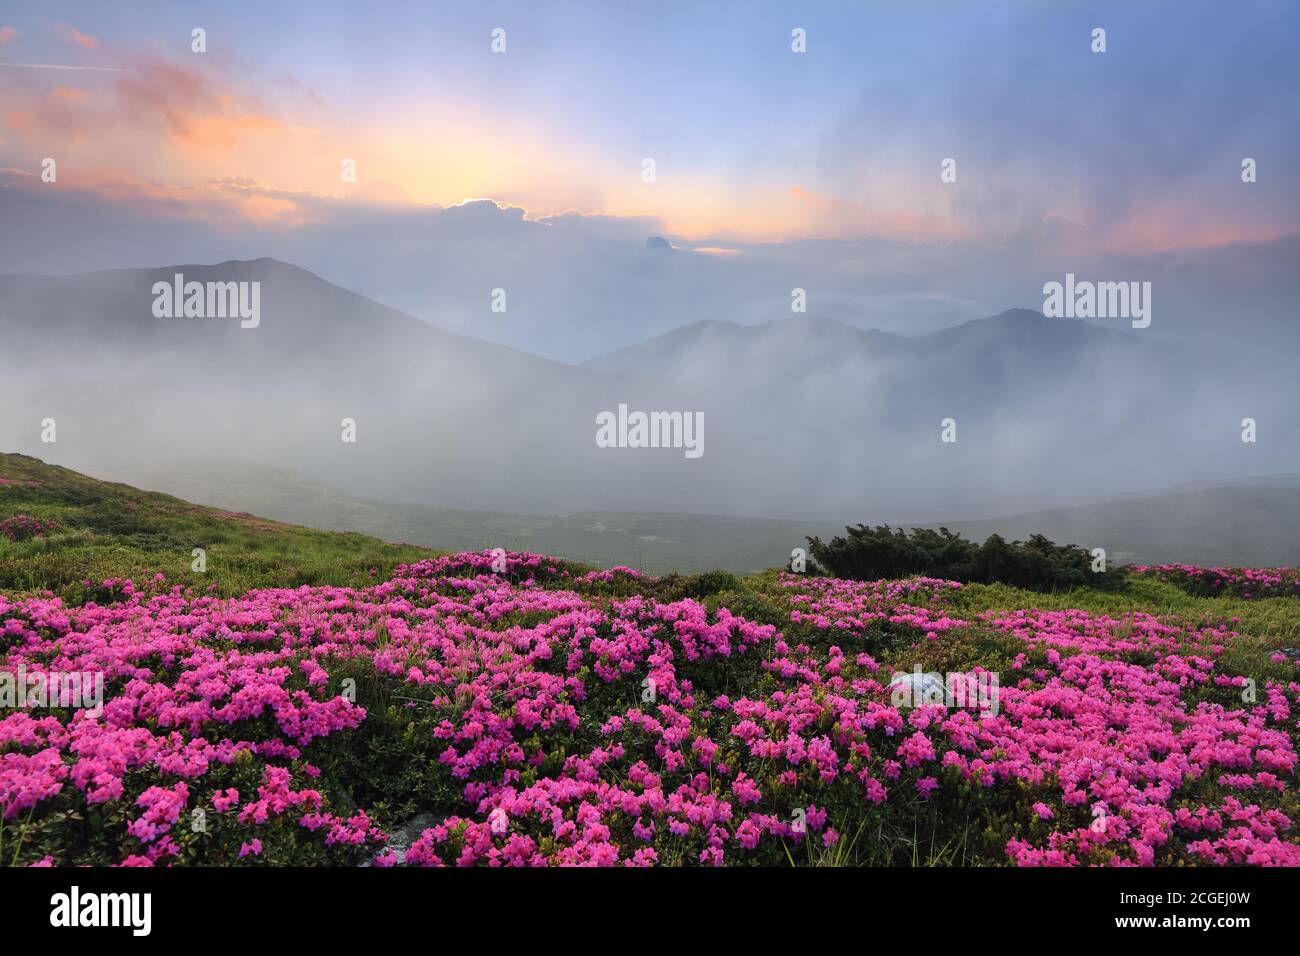 Morgenlandschaft mit blühenden Rhododendron, Nebel, hohen Bergen und Sonnenuntergang. Majestätische Sommerlandschaft. Lage Ort der Karpaten, Ukraine Stockfoto